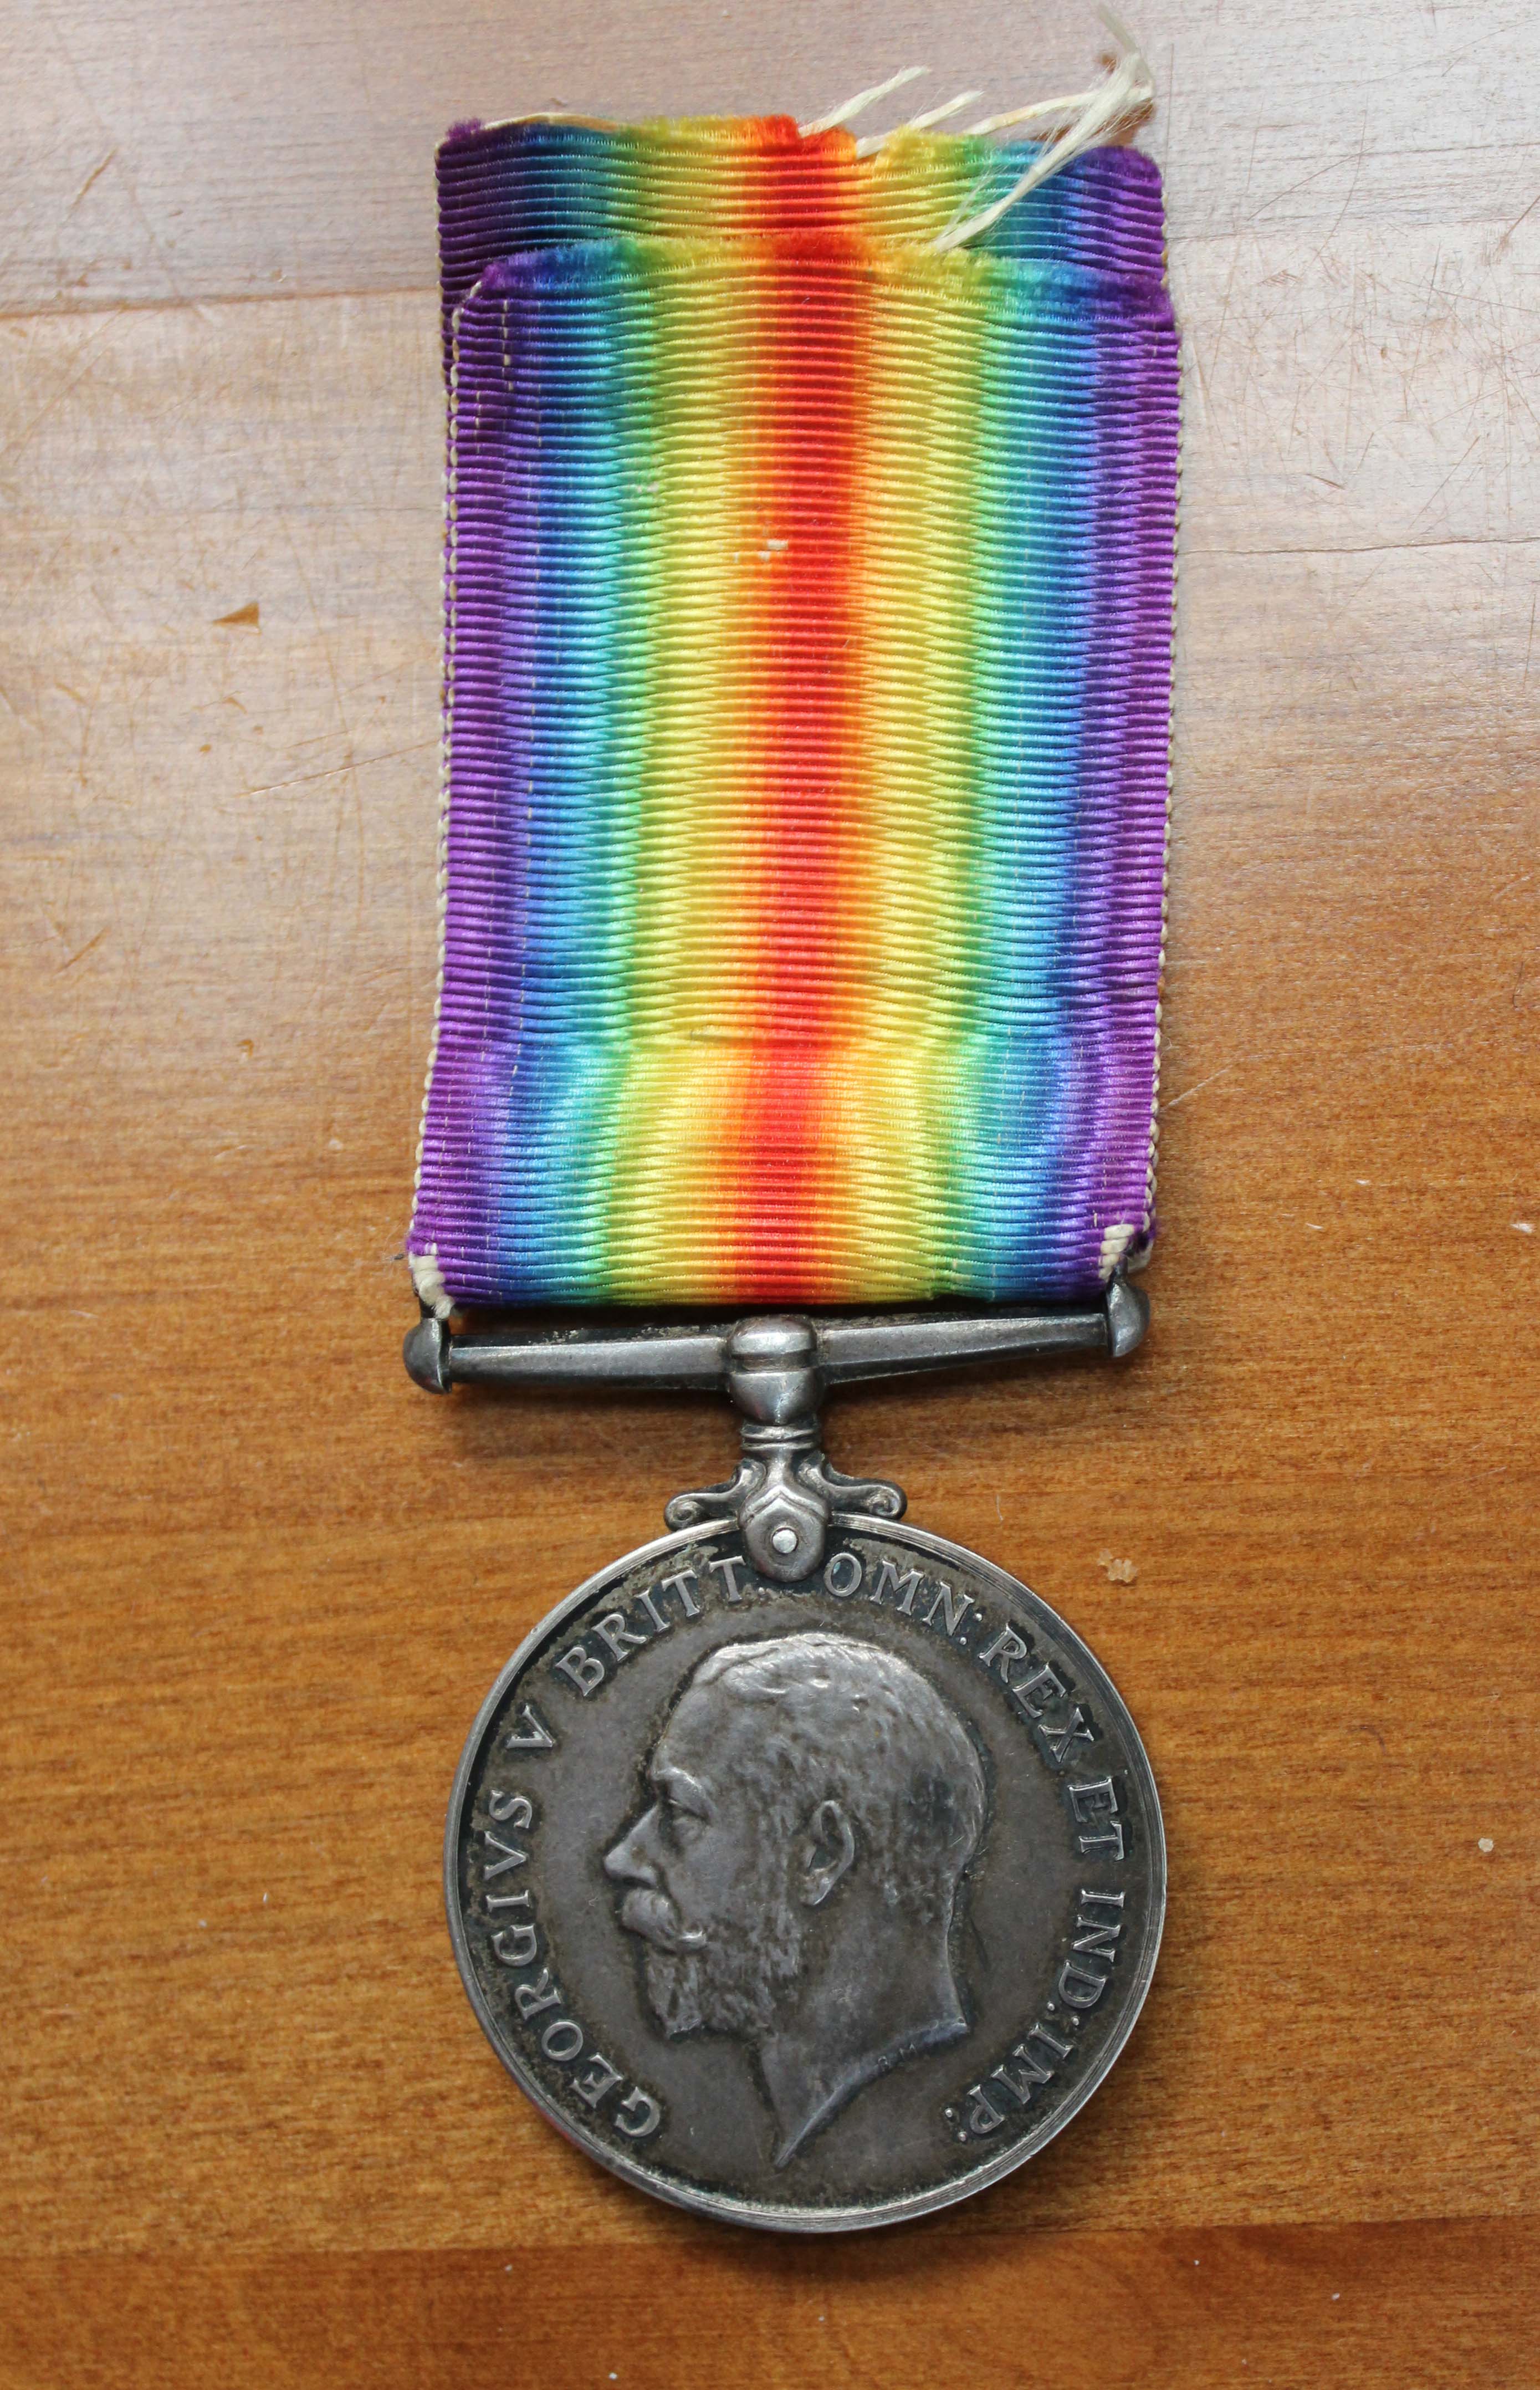 British War Medal, verso - J C Bowkett